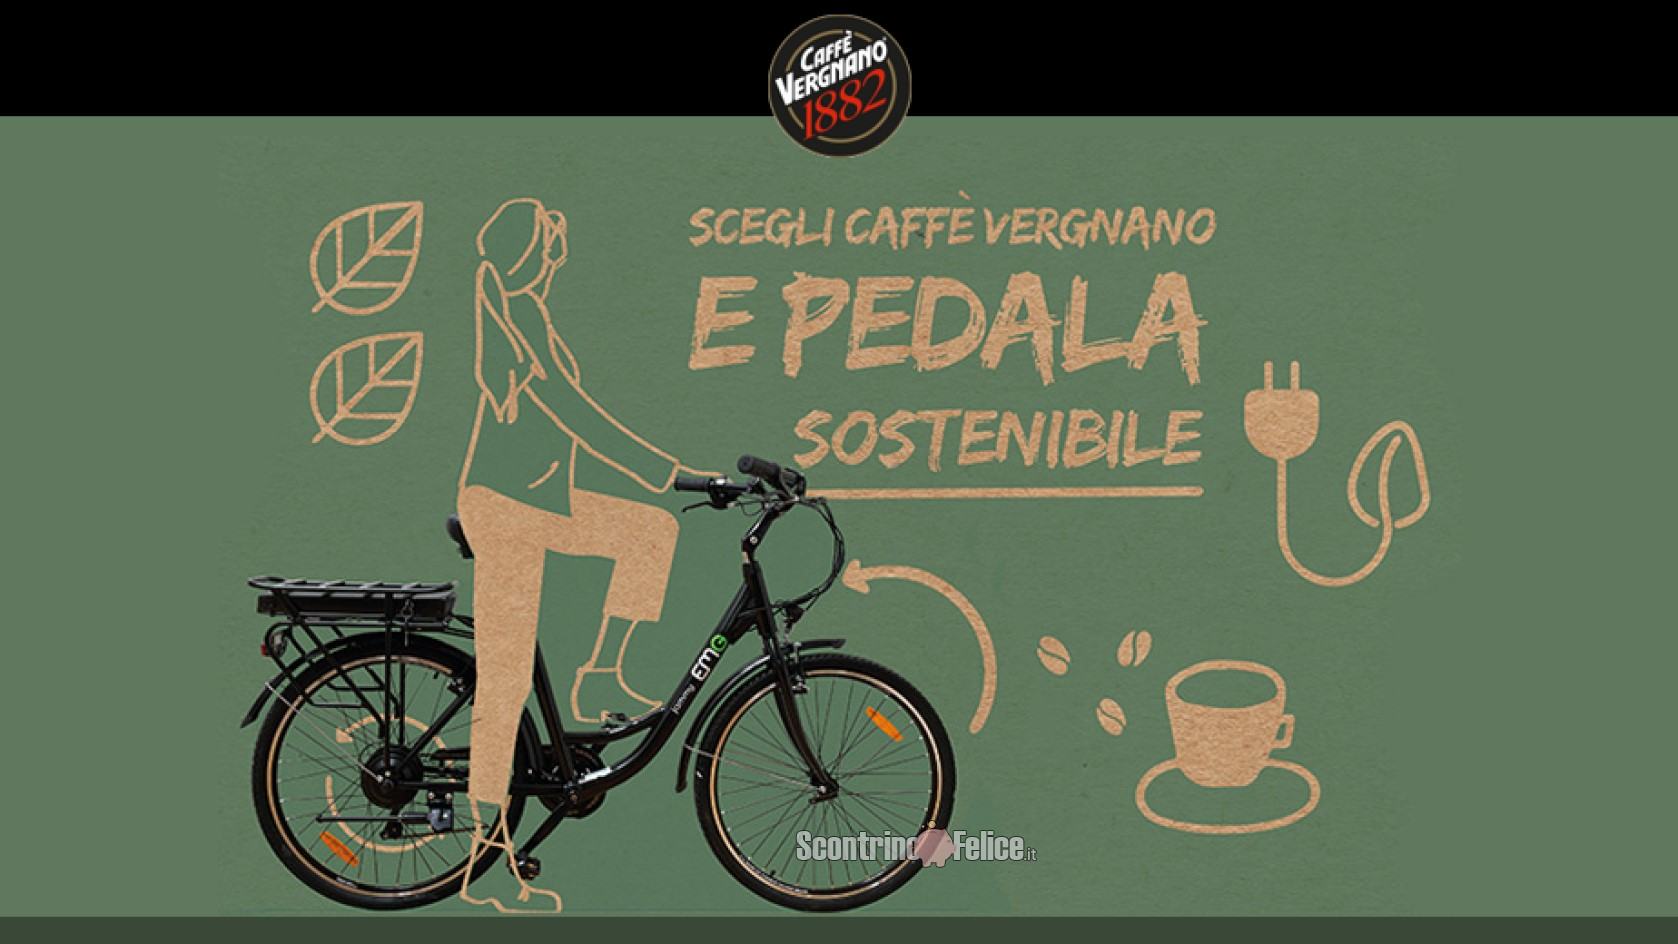 Scegli Caffè Vergnano e pedala sostenibile